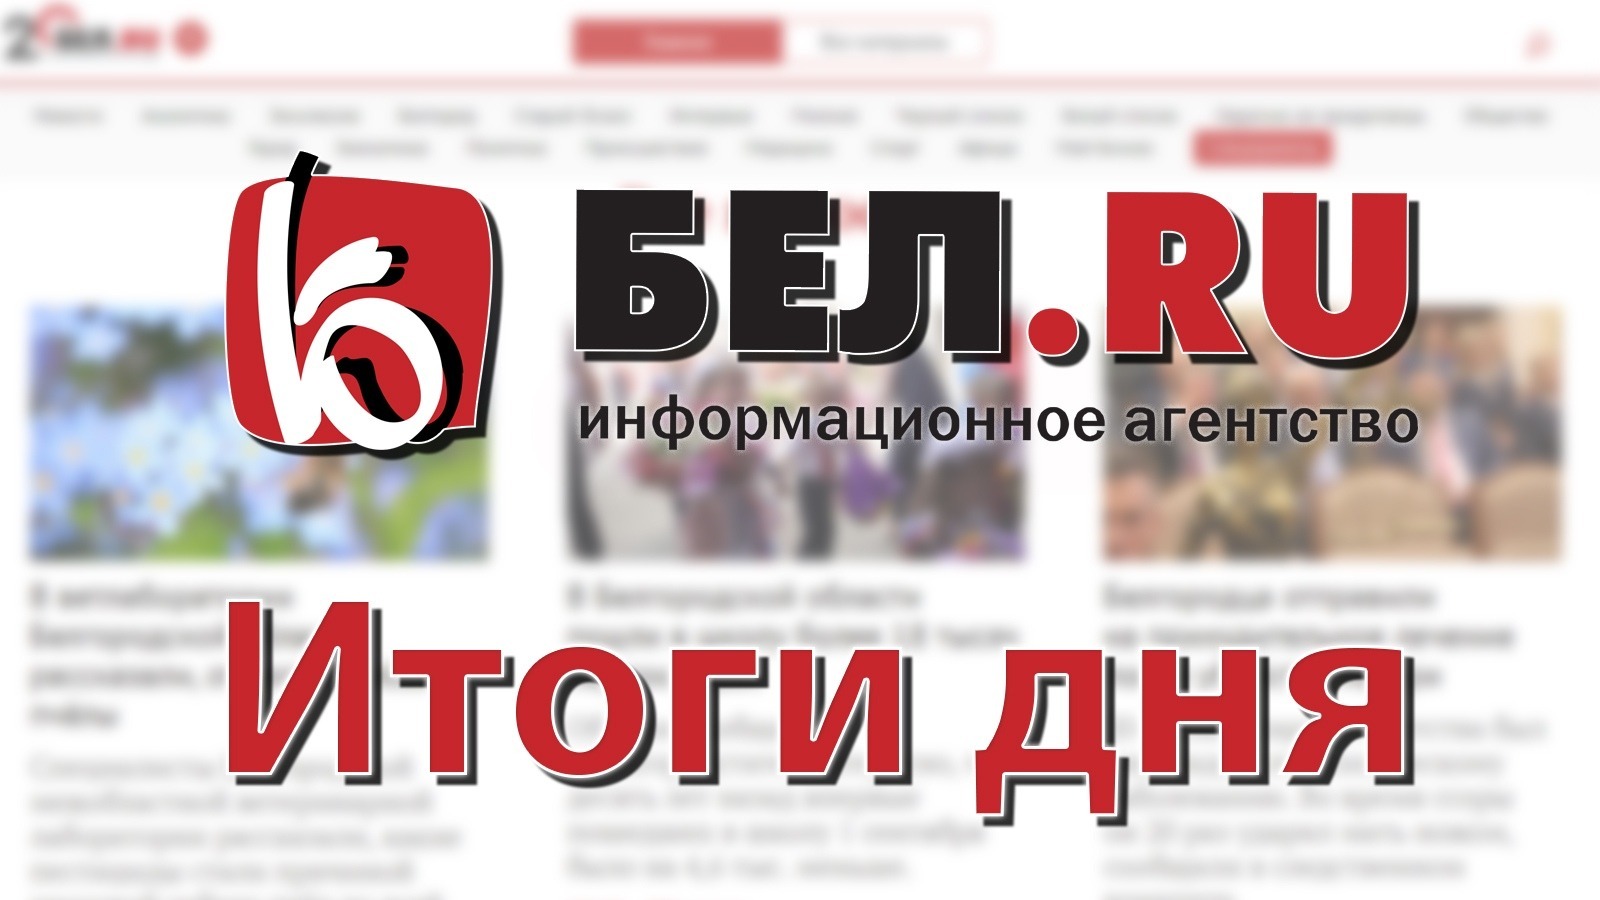 Линейки в школах и увольнение «вечно пьяного врача» обсуждали белгородцы 1 сентября